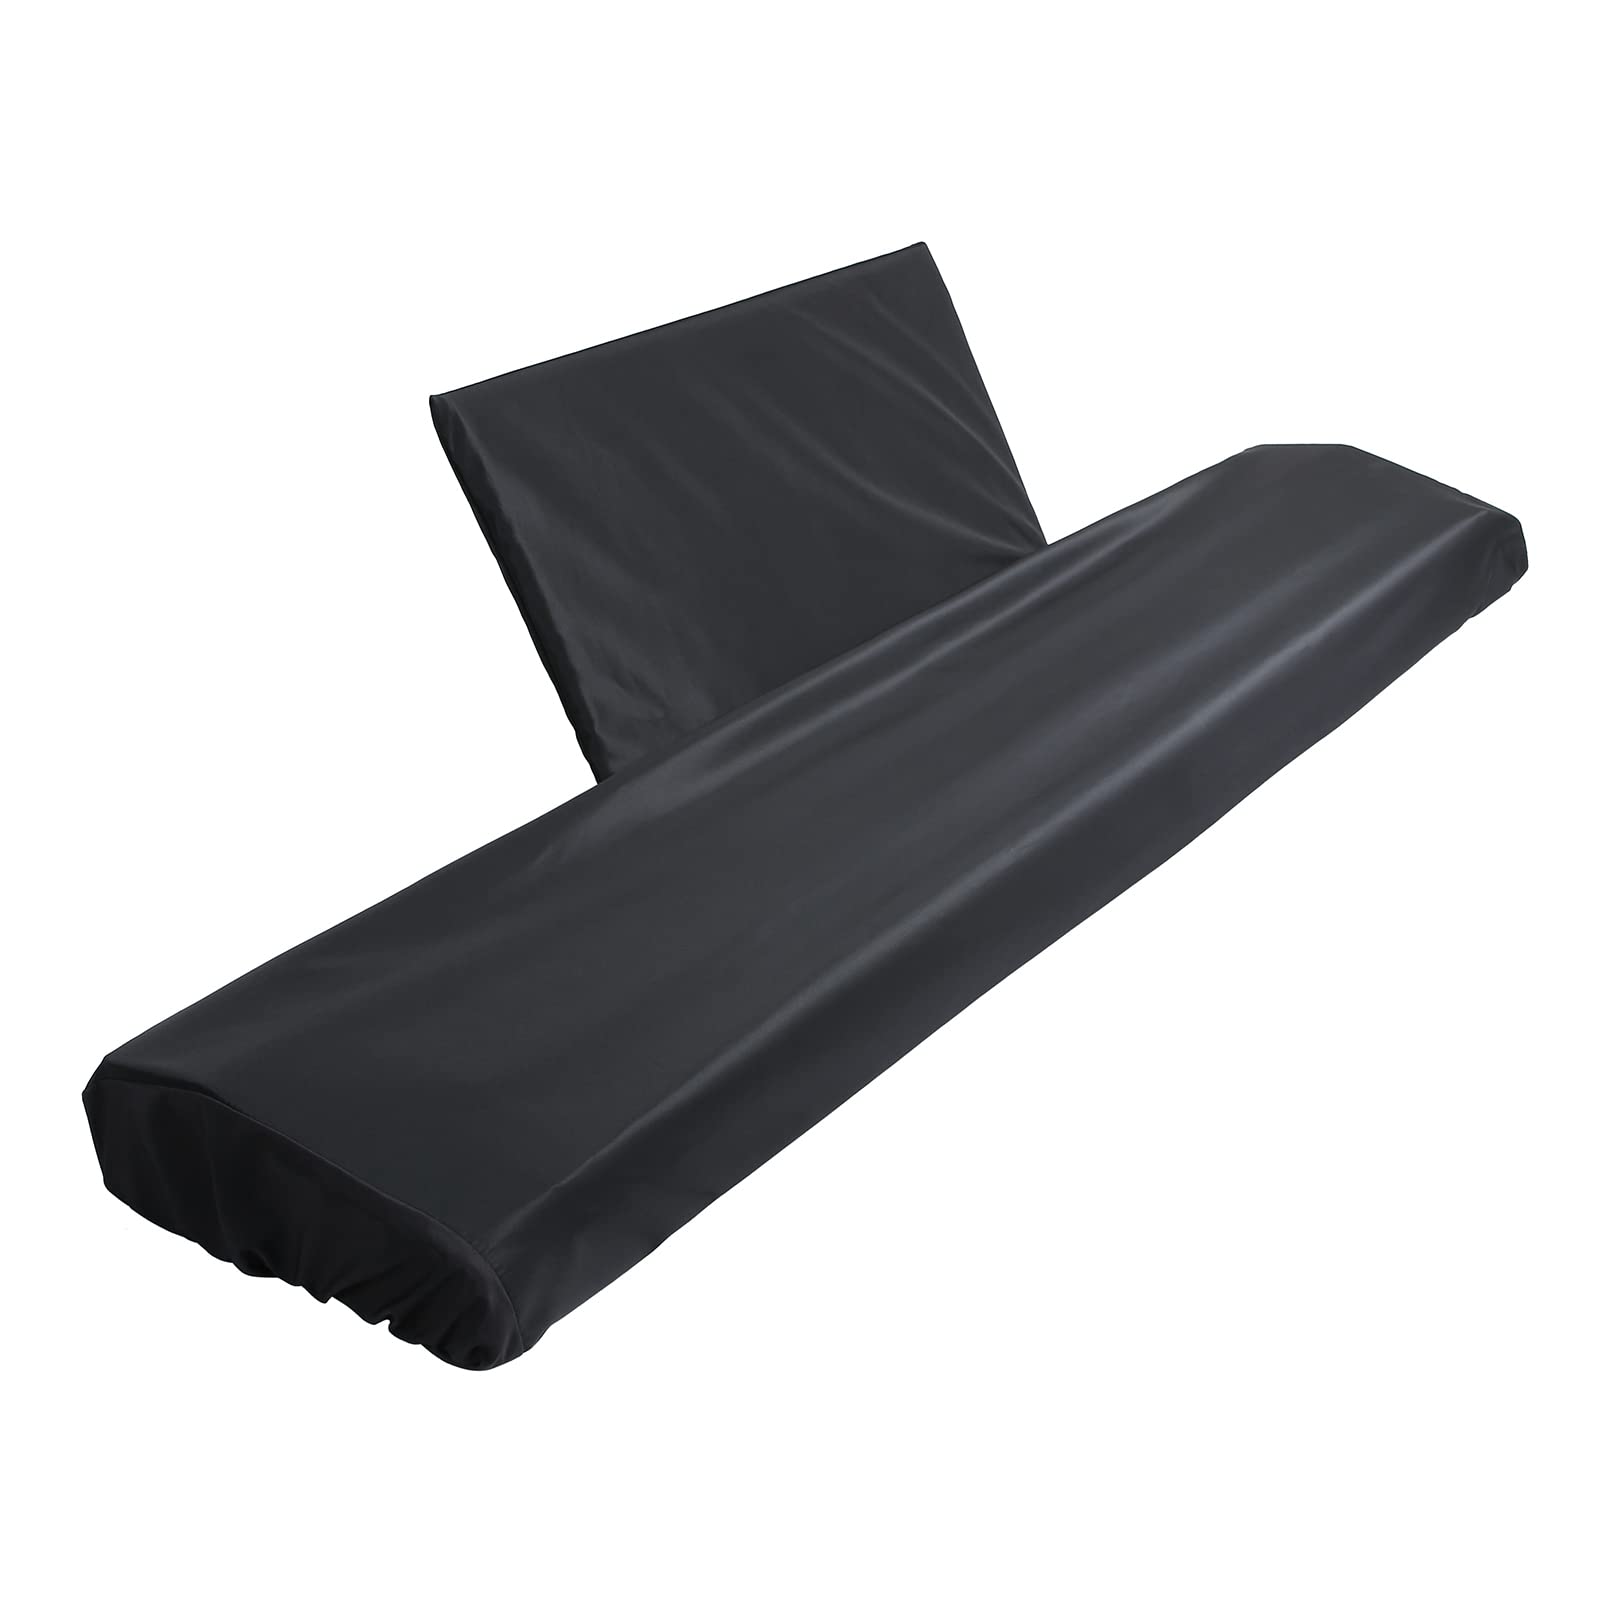 ピアノ キーボード ダスト カバー、防水調整可能なピアノ キーボード 88 キー キーボード用実用的なピアノ カバー防塵カバー防塵収納バッ